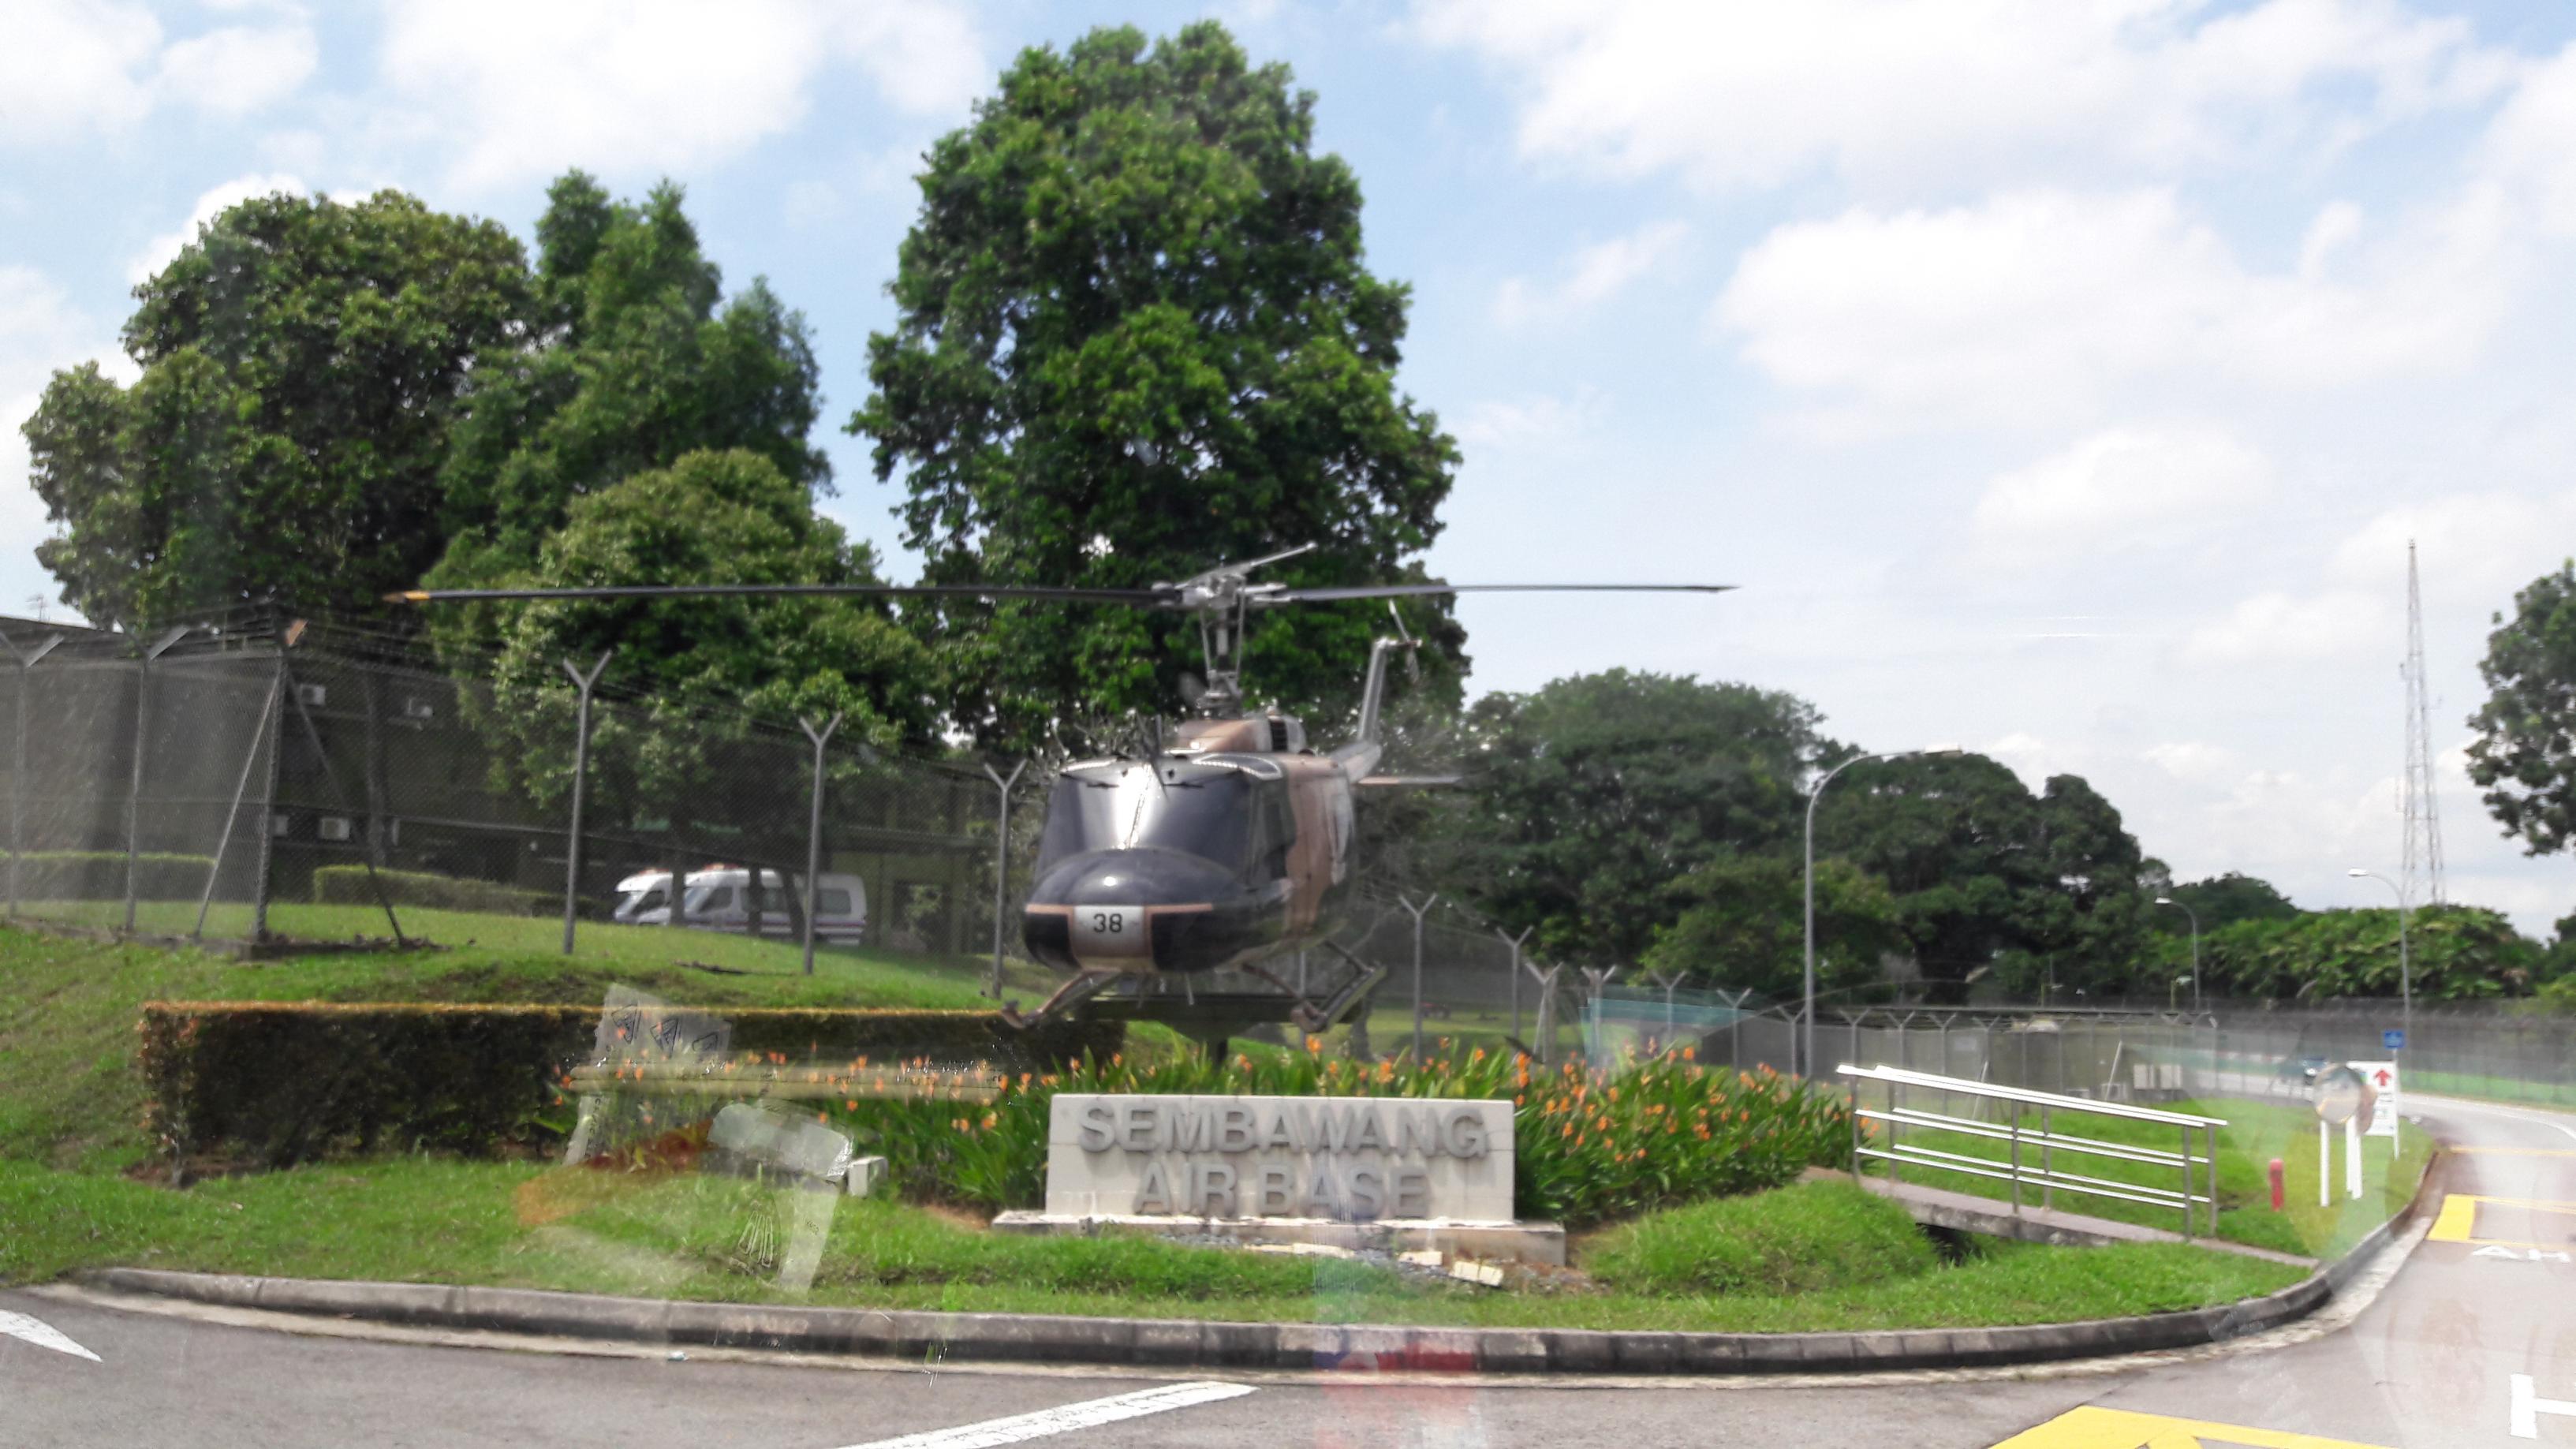 Naam: UH-1 , Sembawang Air Base..jpg
Bekeken: 408
Grootte: 518,1 KB